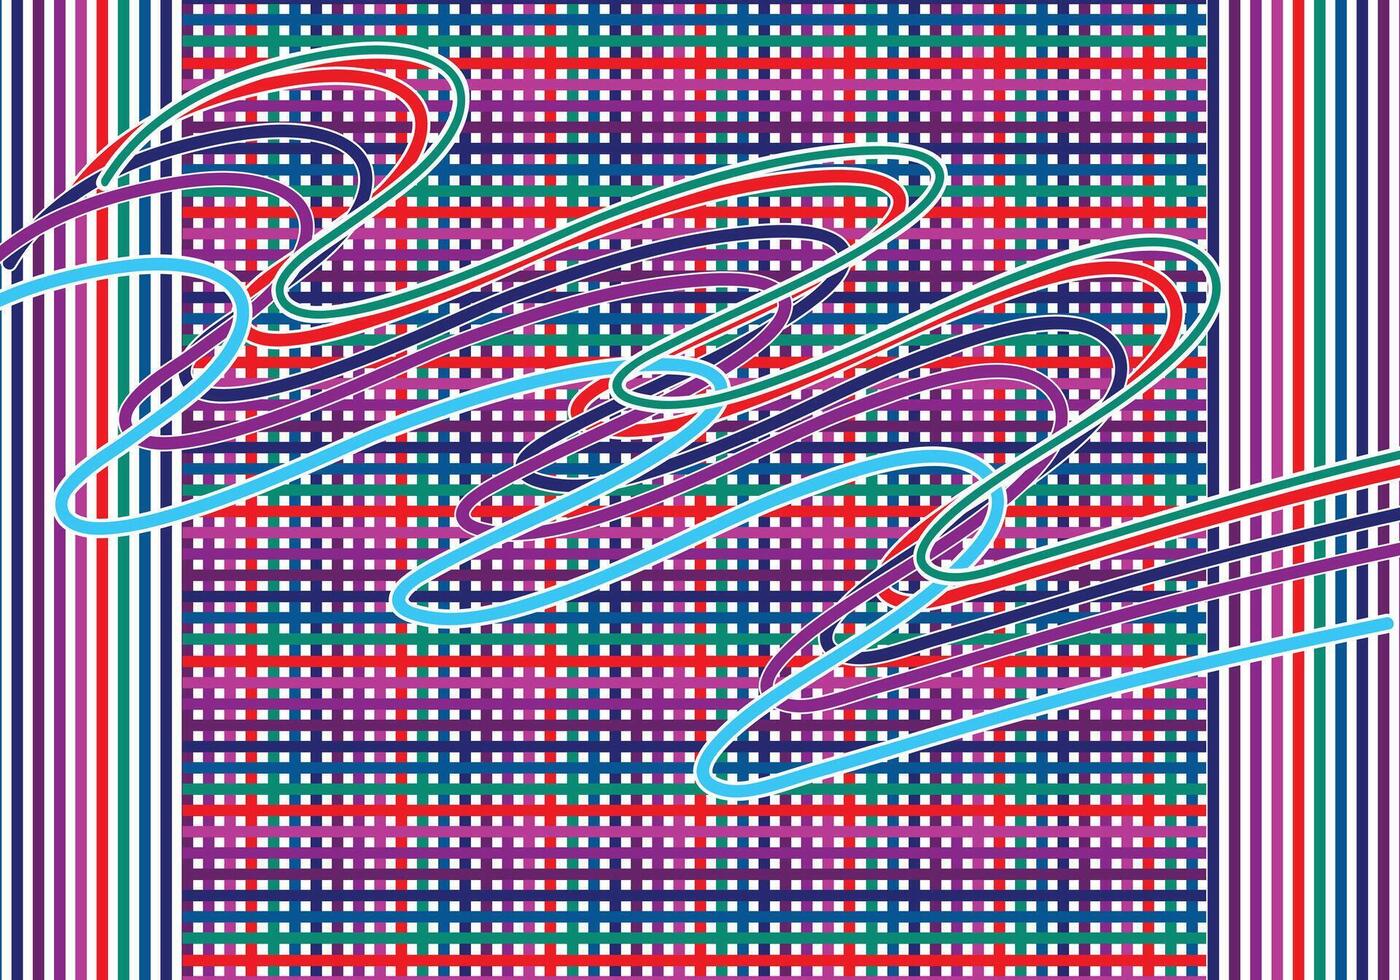 Kurve Linien mit Gerade Linien unter, multi Farbe Vektor zum Hintergrund Design.